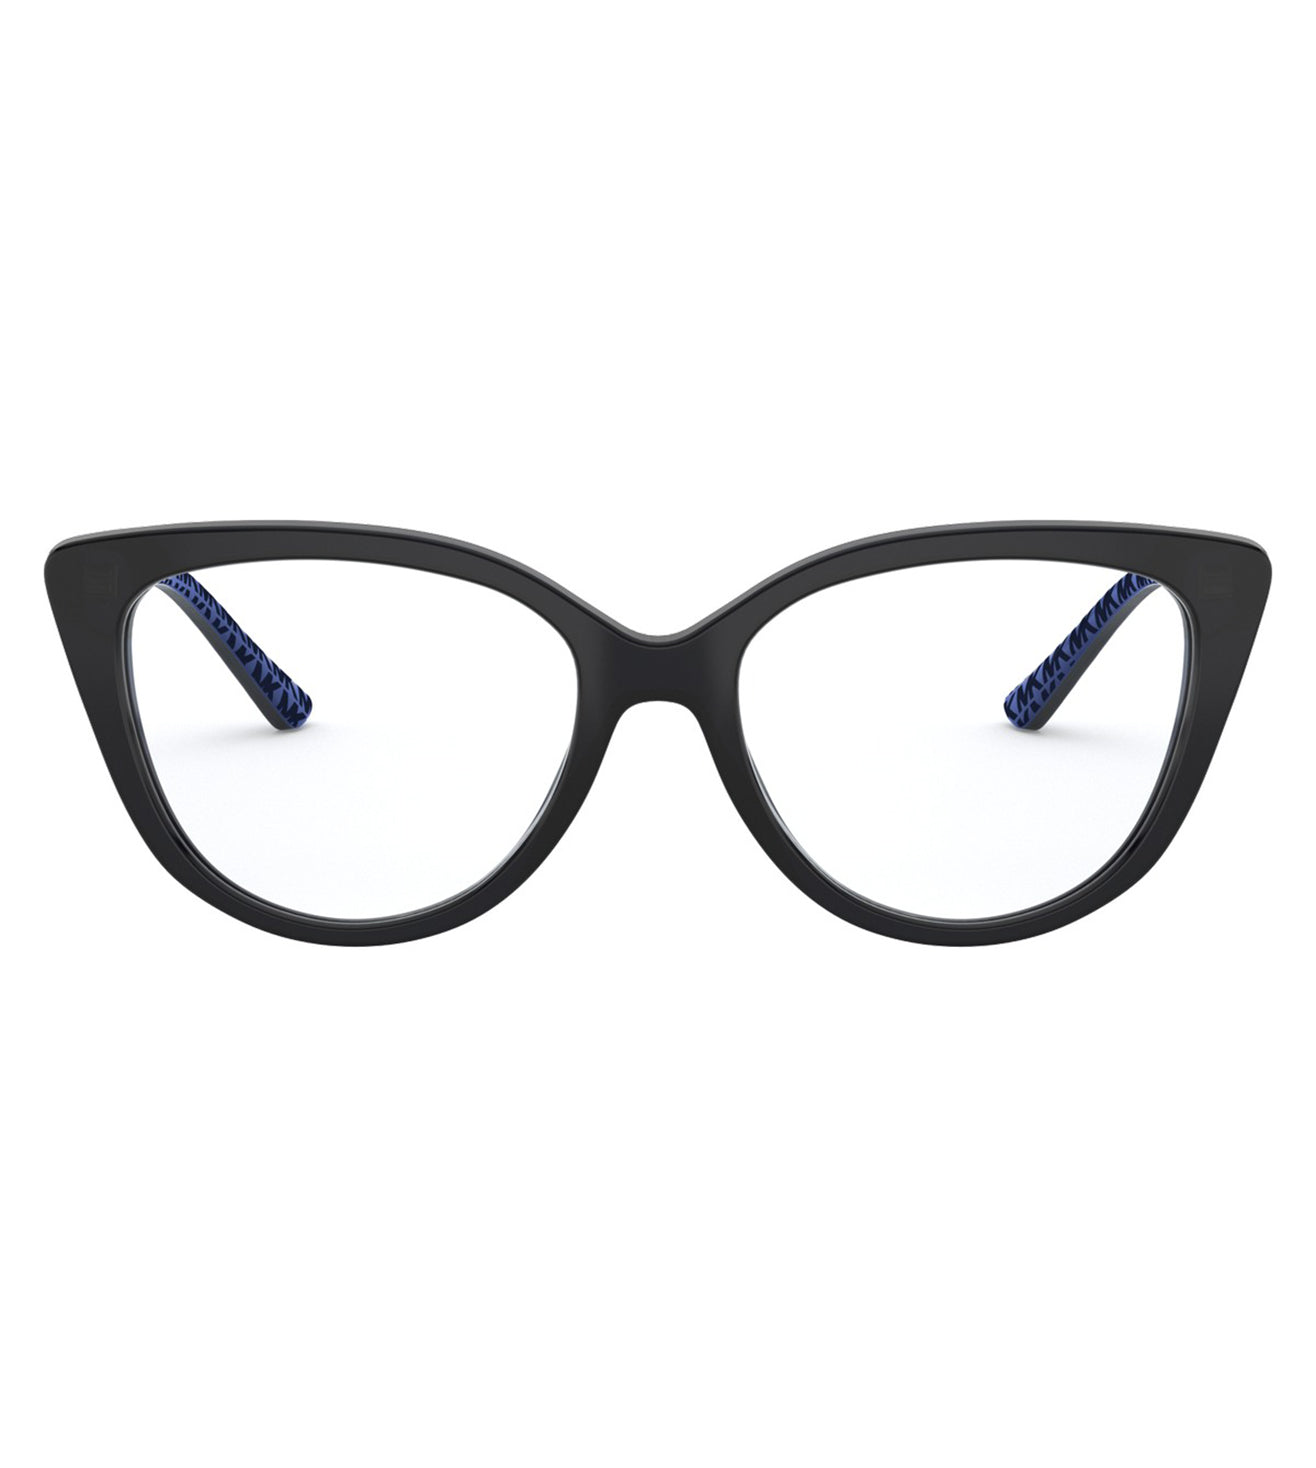 Michael Kors Women's Navy Cat-eye  Eyeglasses